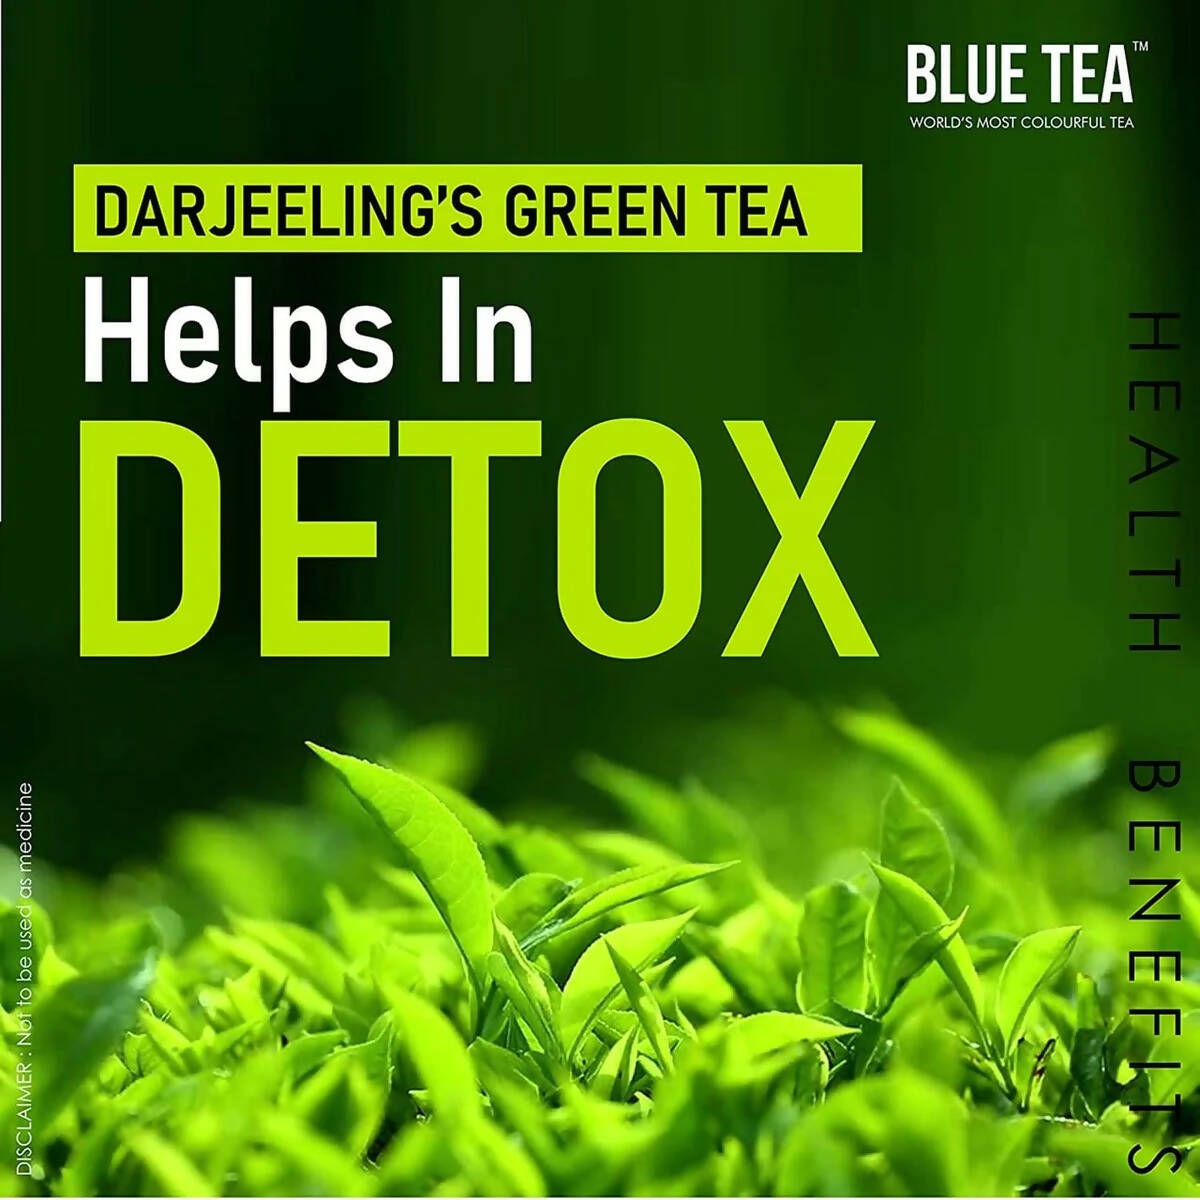 Blue Tea Organic Moringa Green Tea - Distacart